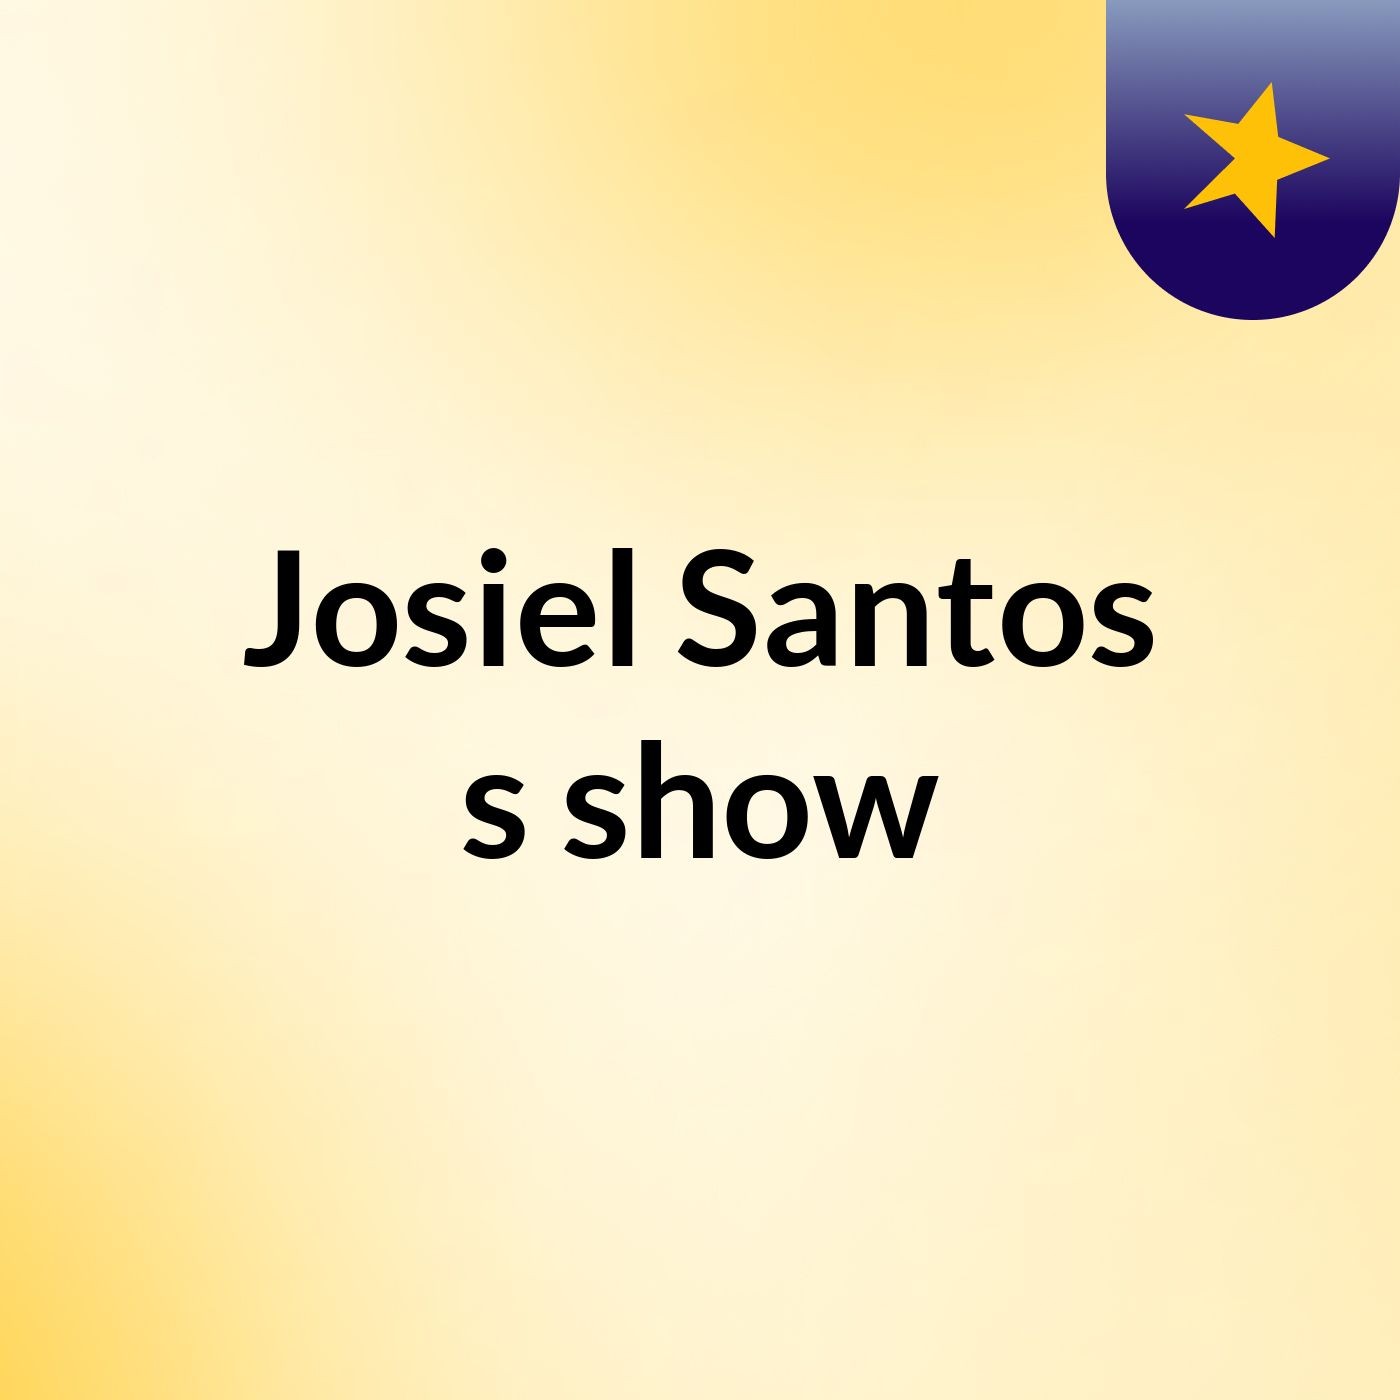 Episódio 4 - Josiel Santos's show